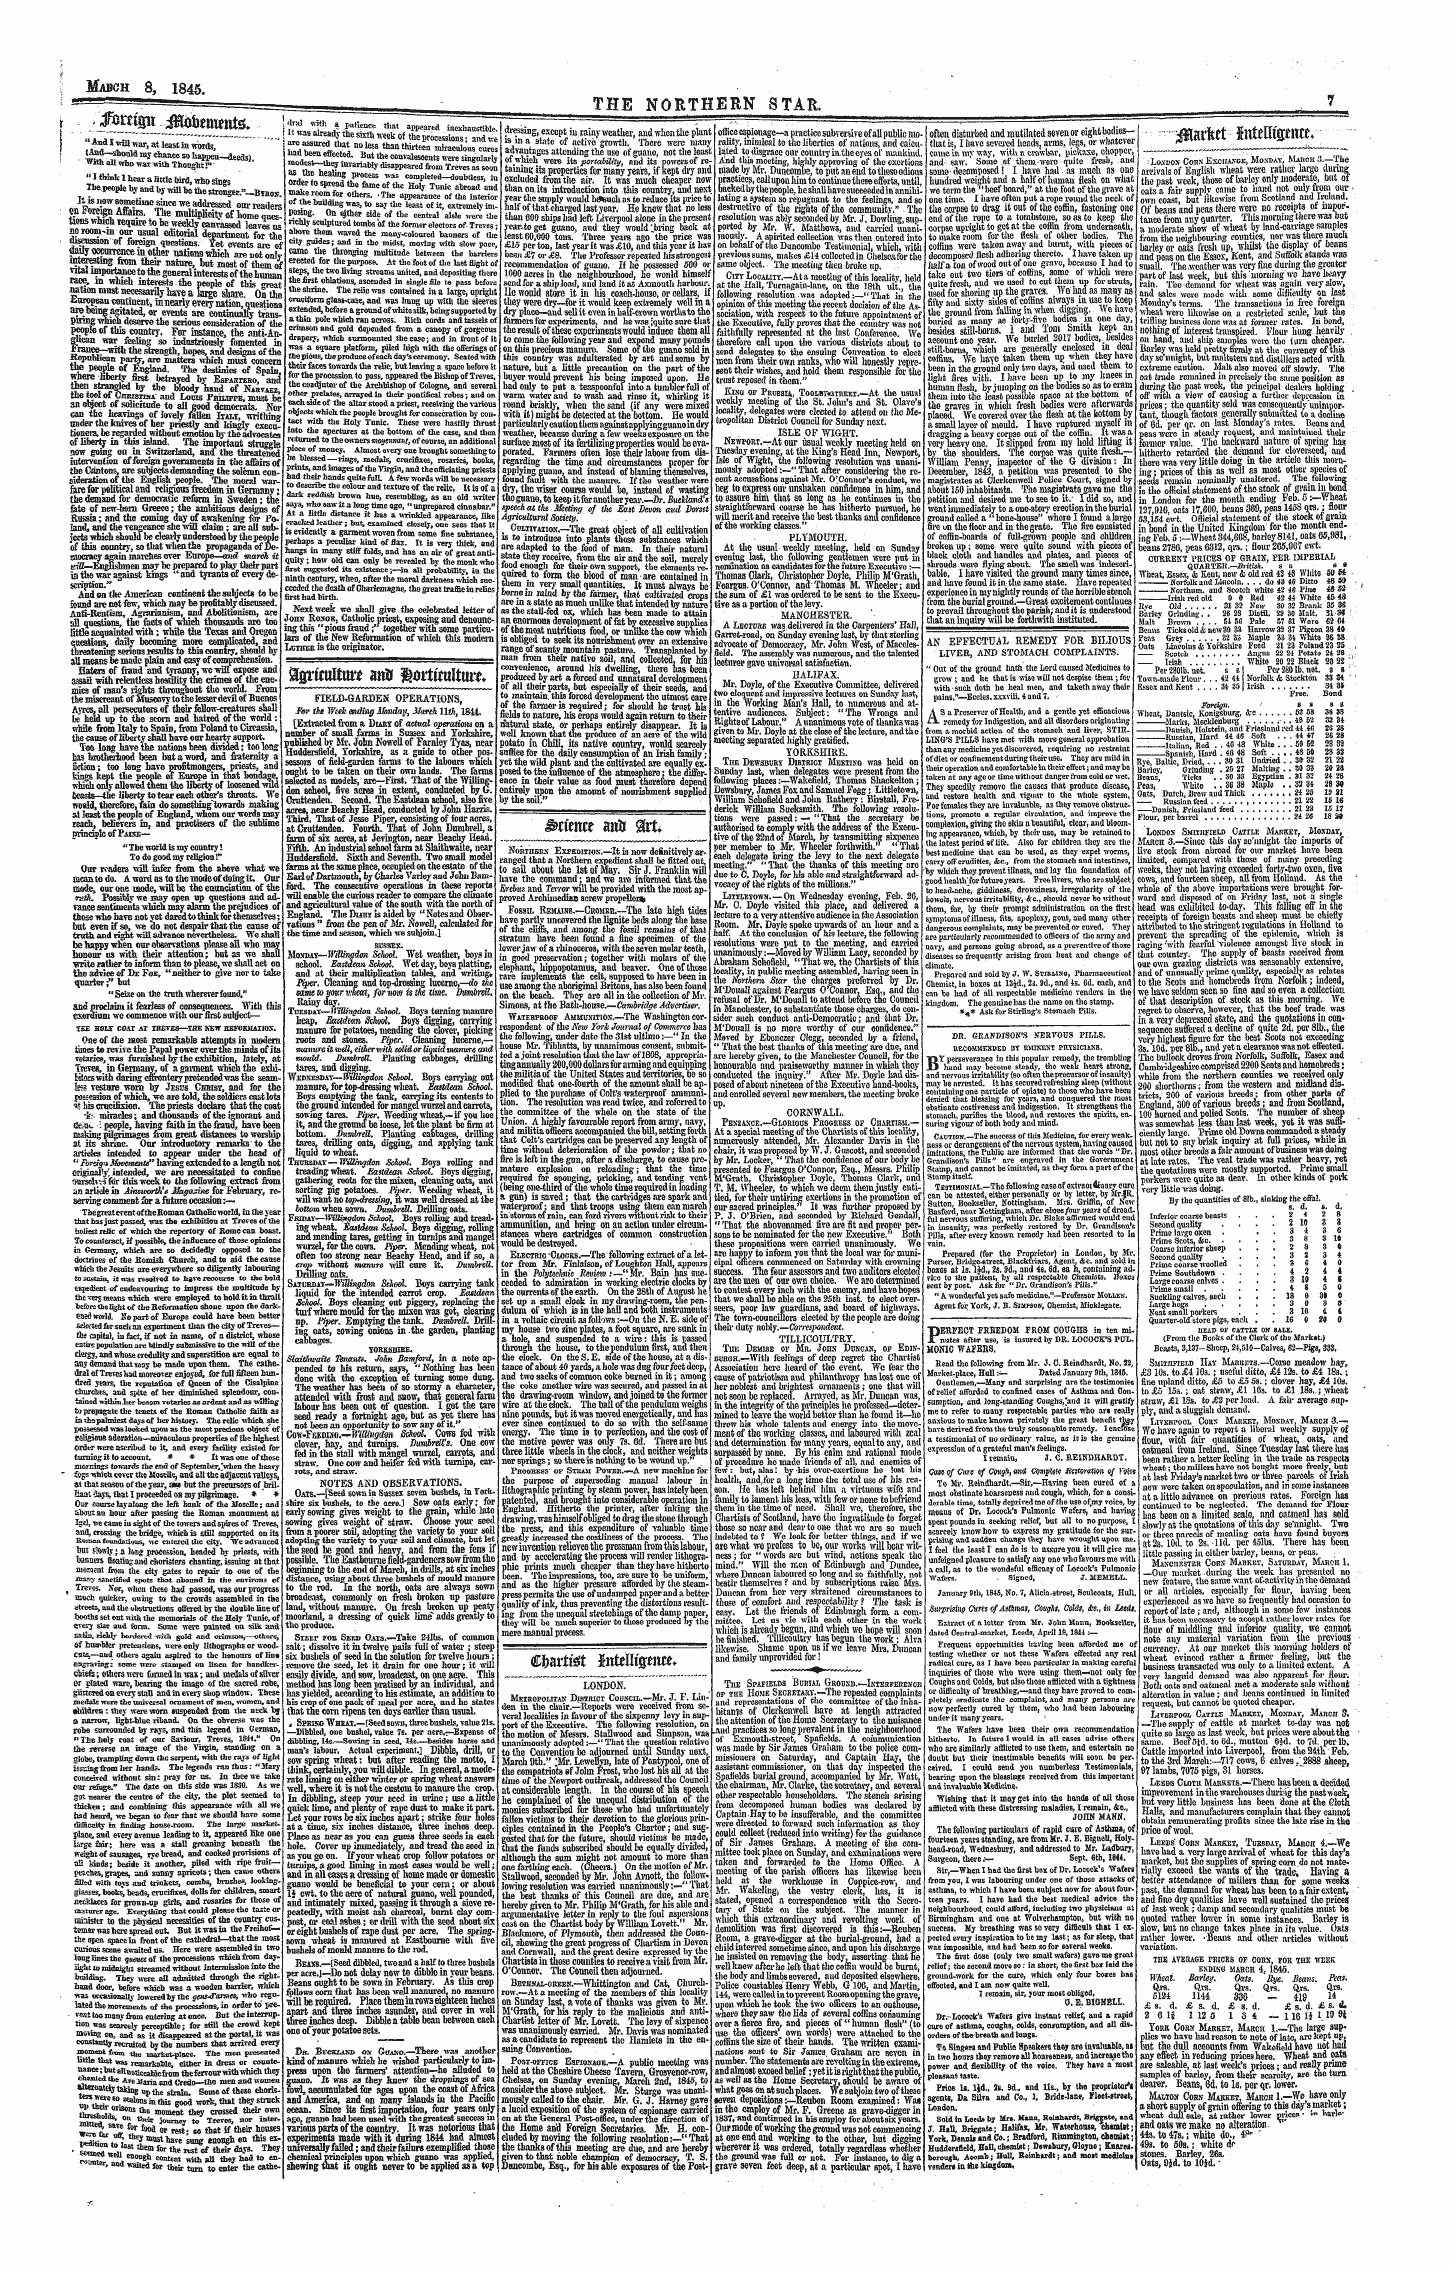 Northern Star (1837-1852): jS F Y, 1st edition - J J$Y*(P I^Benm^